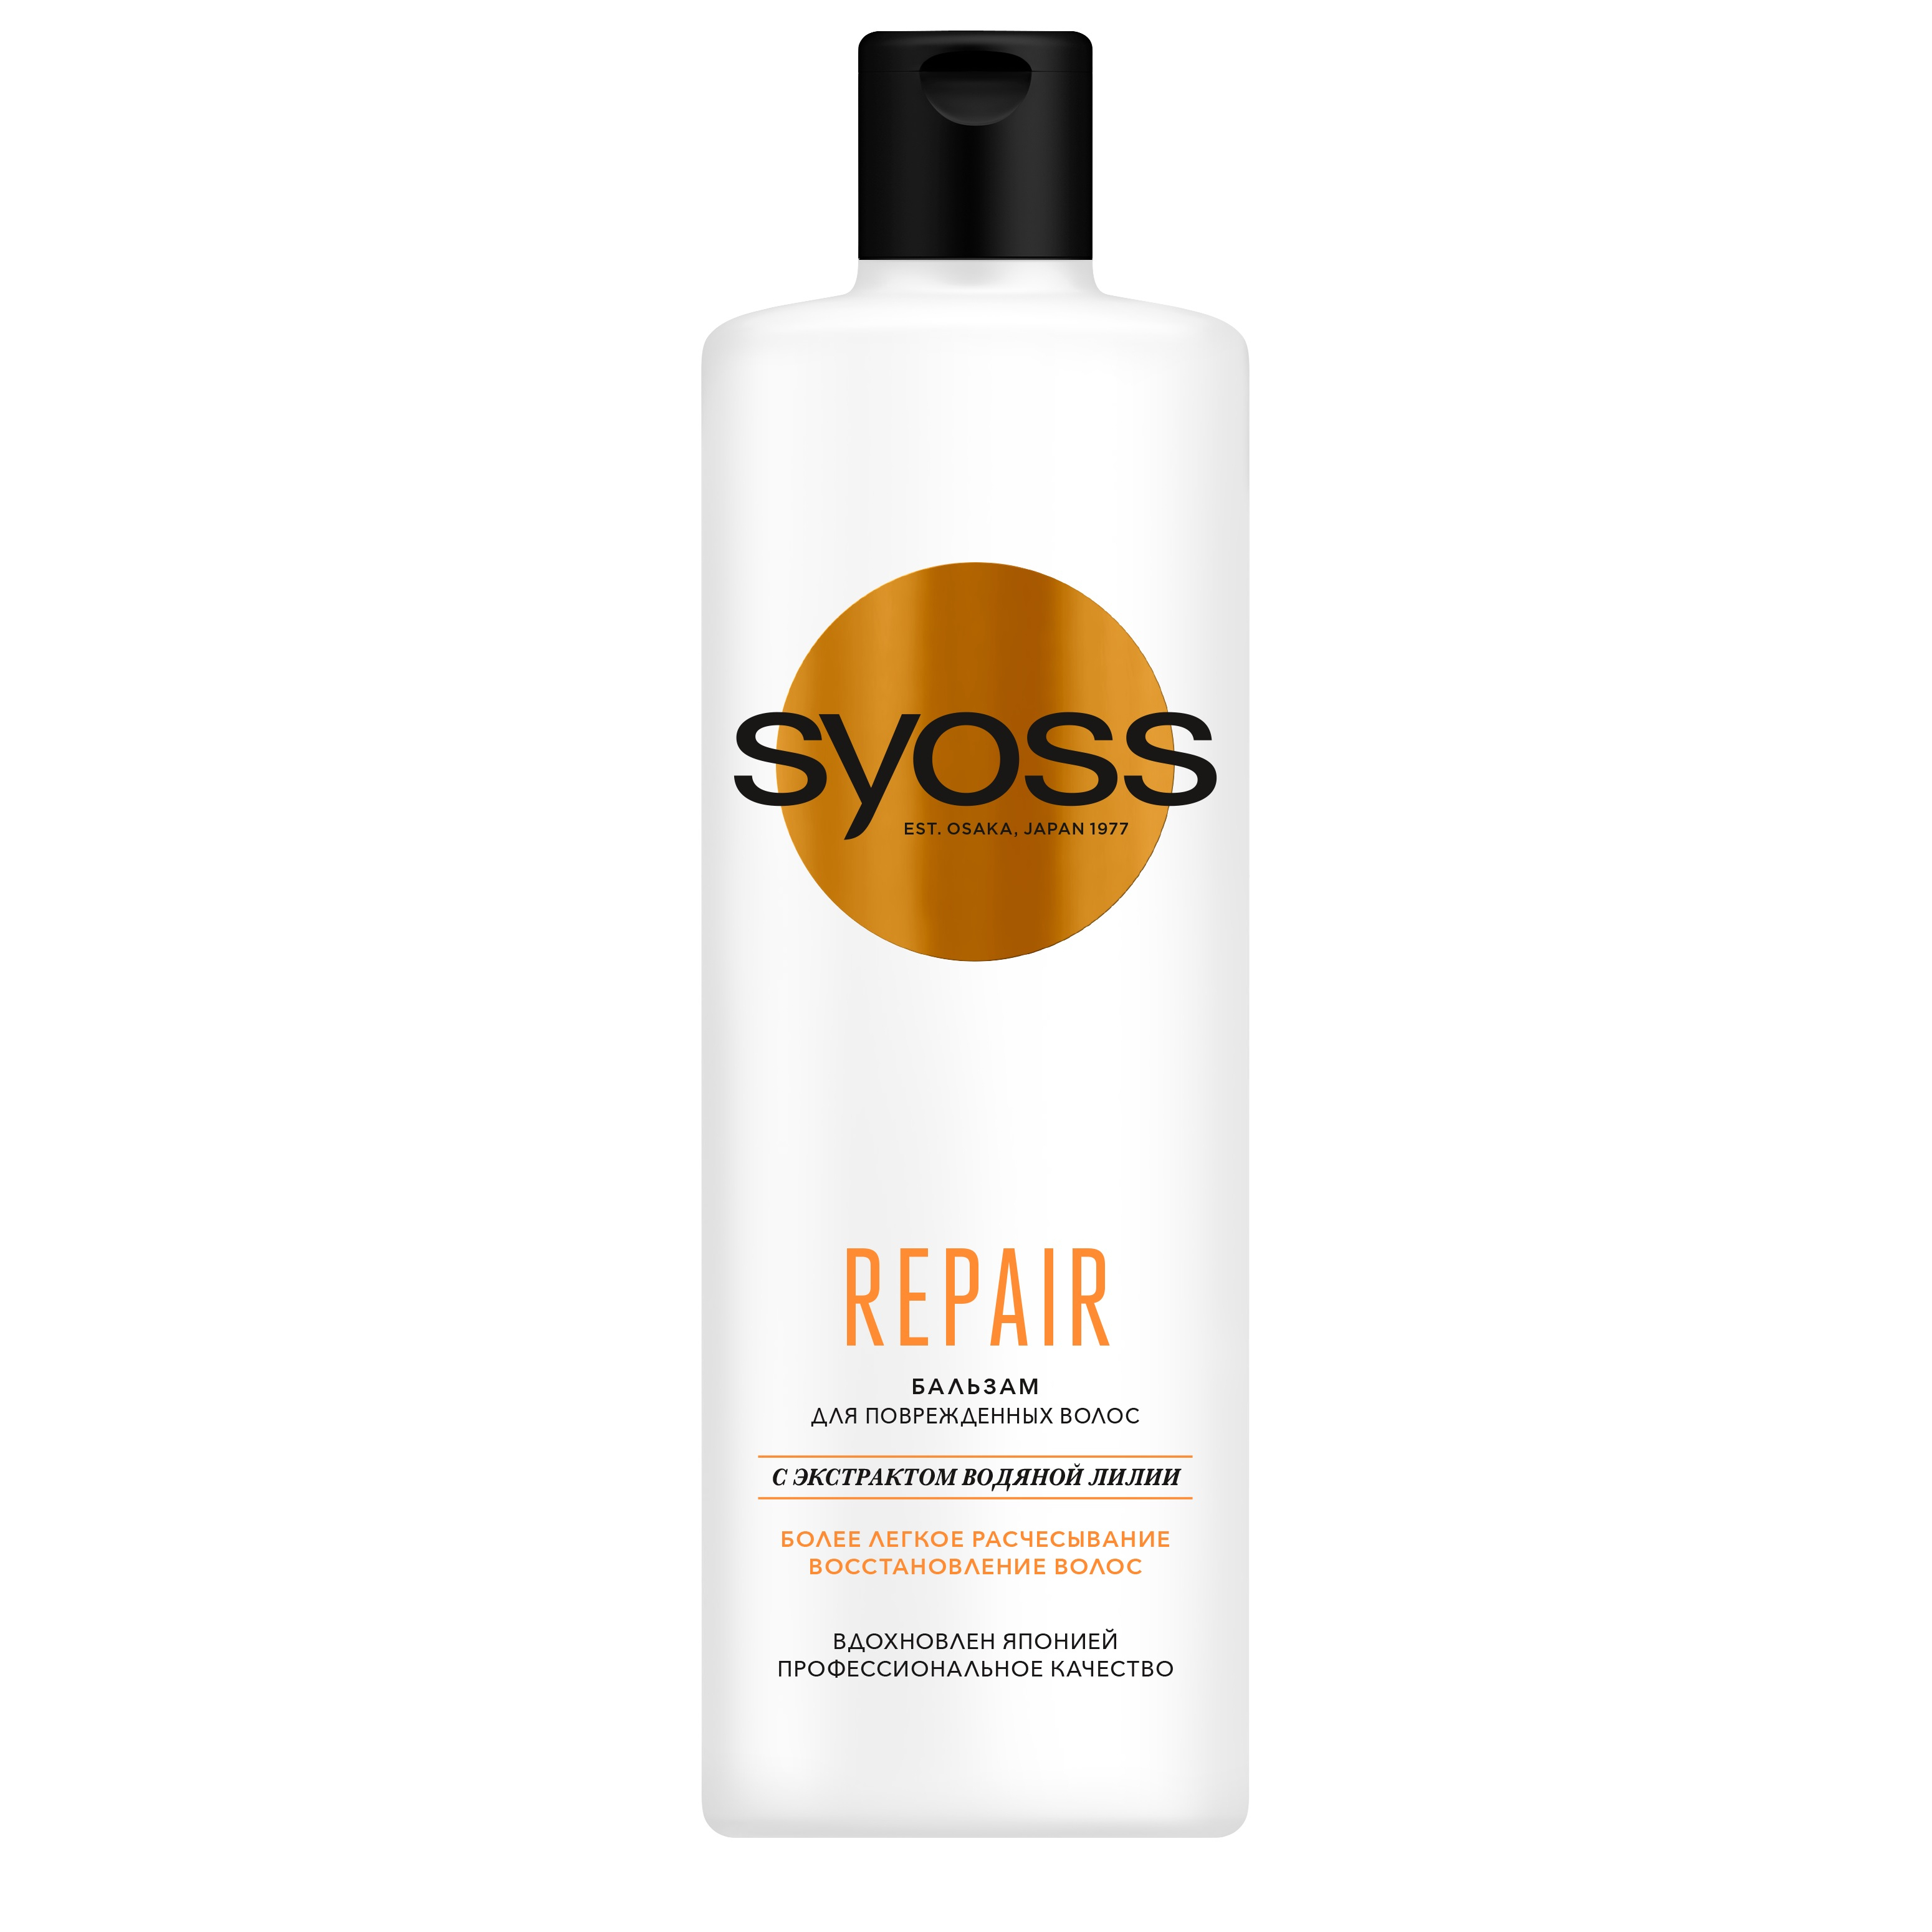 Бальзам для волос Syoss Repair восстанавливающий 450 мл маска бальзам для волос sendo восстанавливающая 380 мл